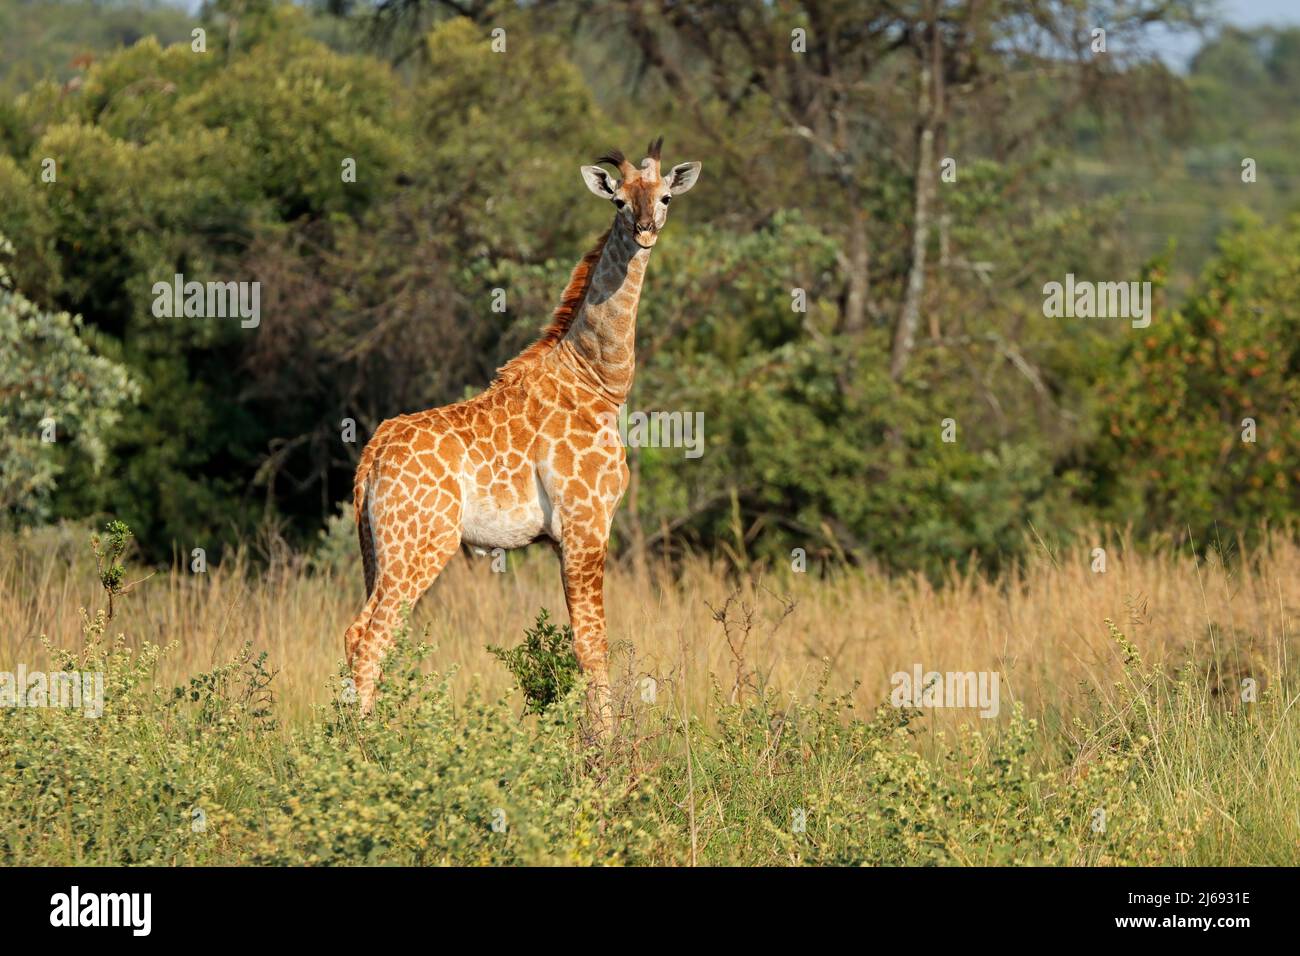 Une jeune girafe (Giraffa camelopardalis) en habitat naturel, en Afrique du Sud Banque D'Images